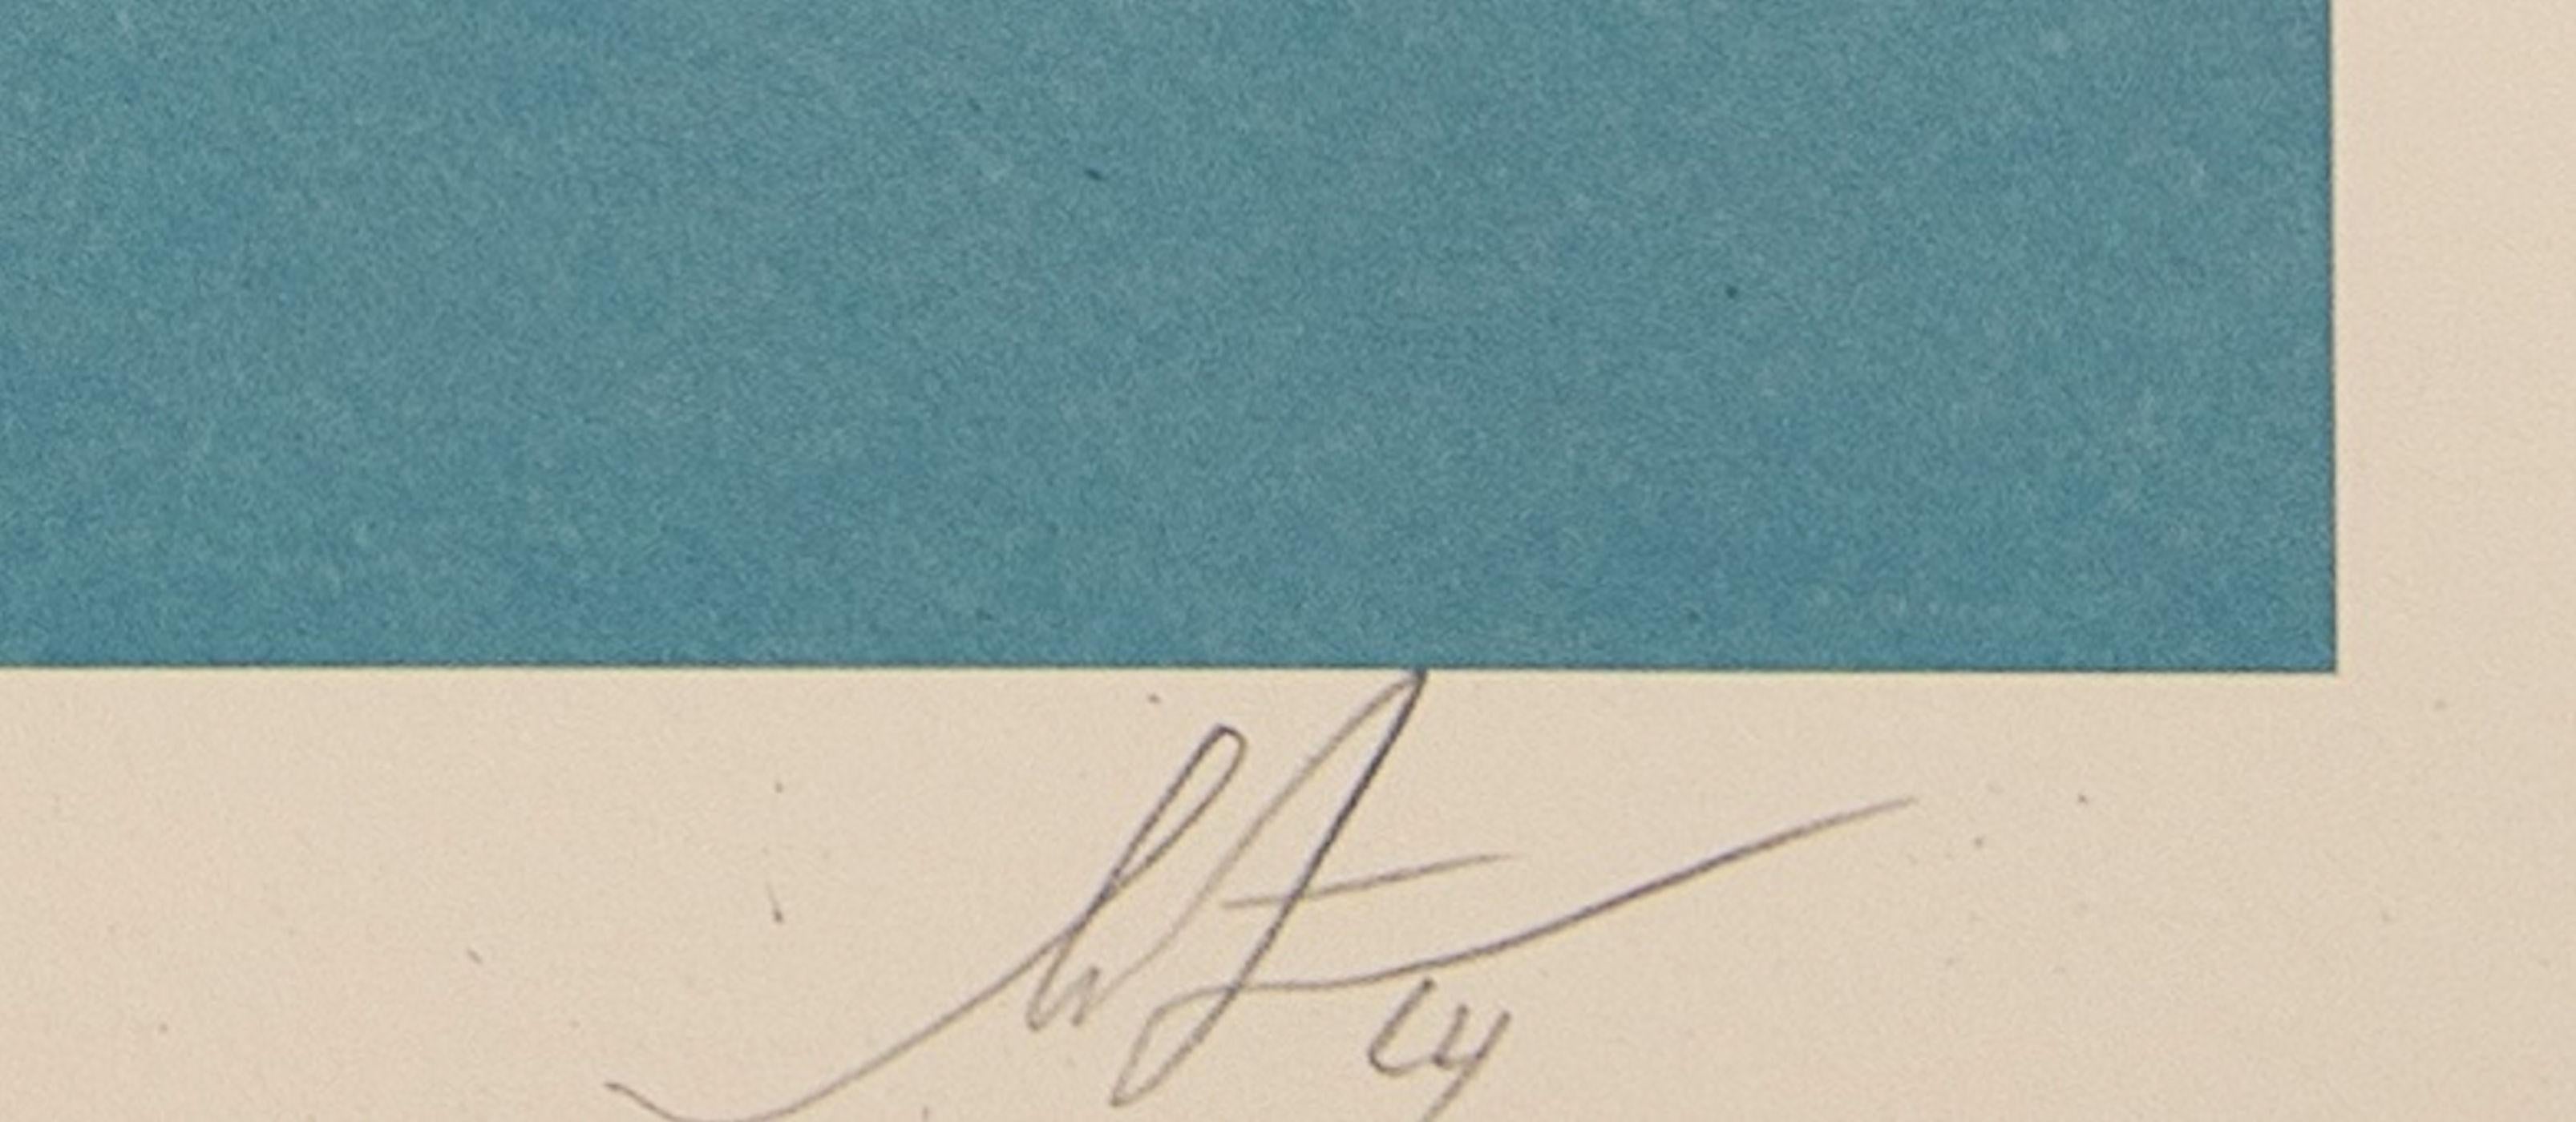 Shepard Fairey
Radikaler Frieden

Siebdruck
Mit Bleistift vom Künstler handsigniert 
Unnumerierter Probedruck
Größe 91 x 61 cm (ca. 36 x 24 Zoll)

Ausgezeichneter Zustand